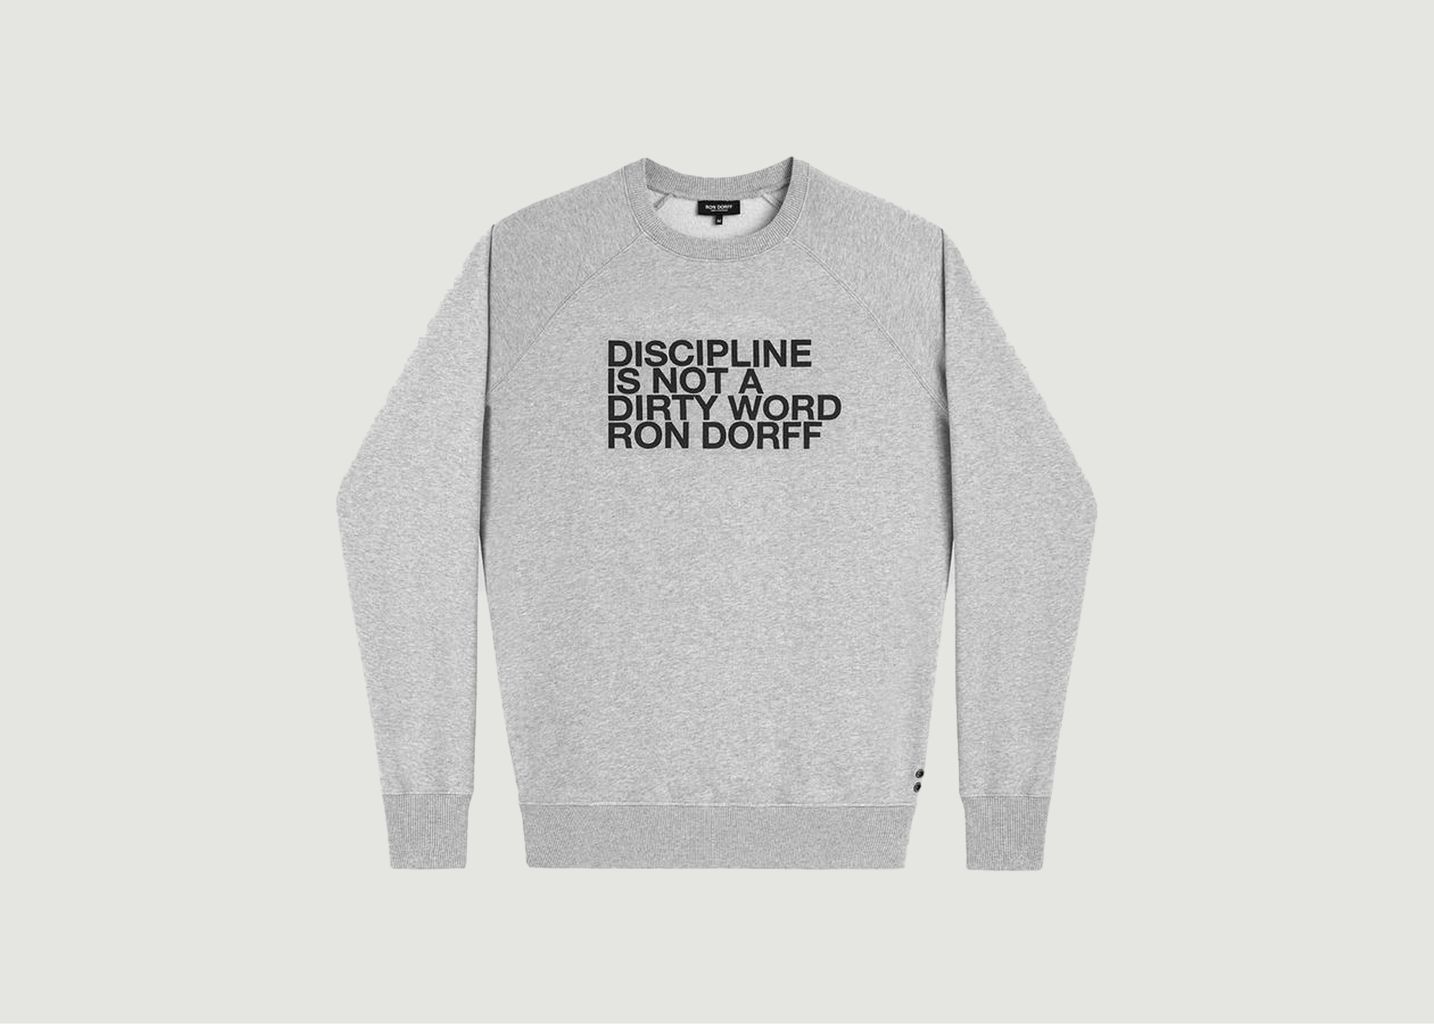 Discipline Sweatshirt - Ron Dorff